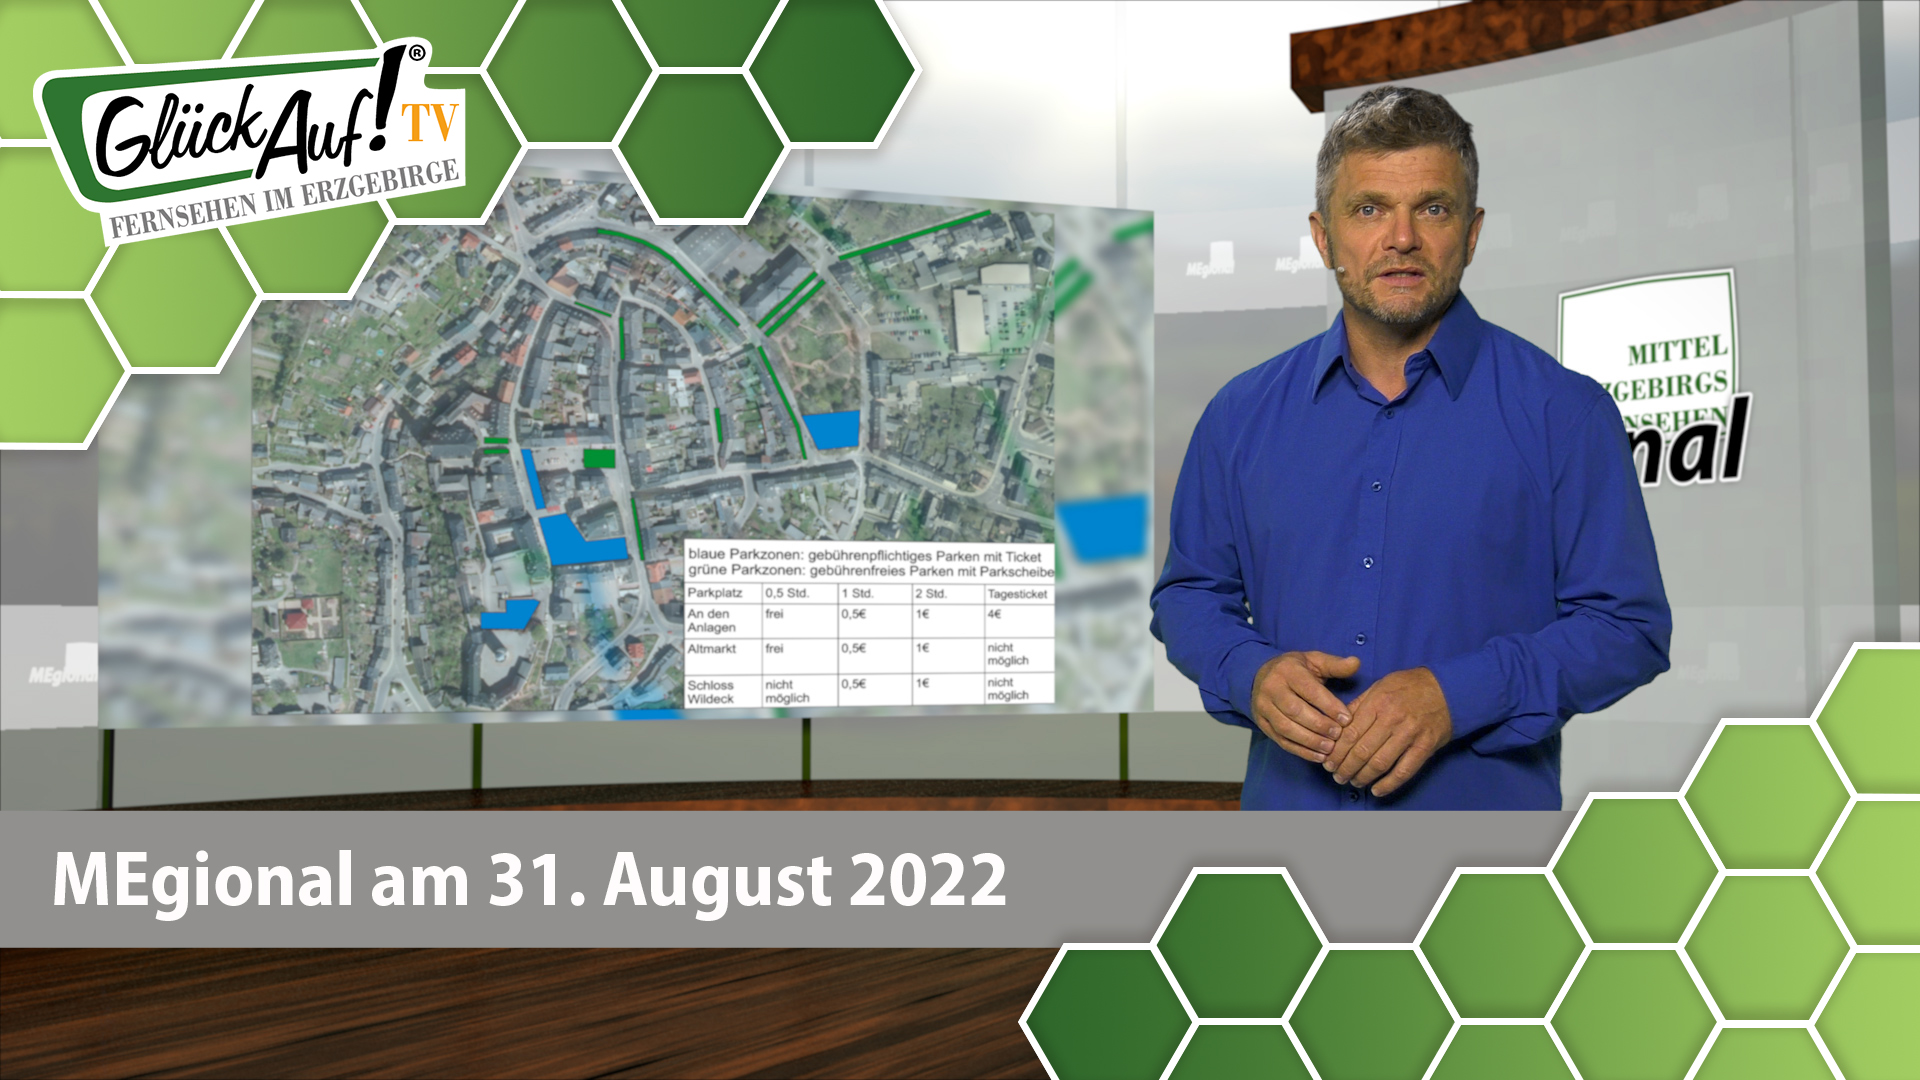 MEgional am 31. August 2022 - mit einer neuen Parkgebührenordnung für Zschopau